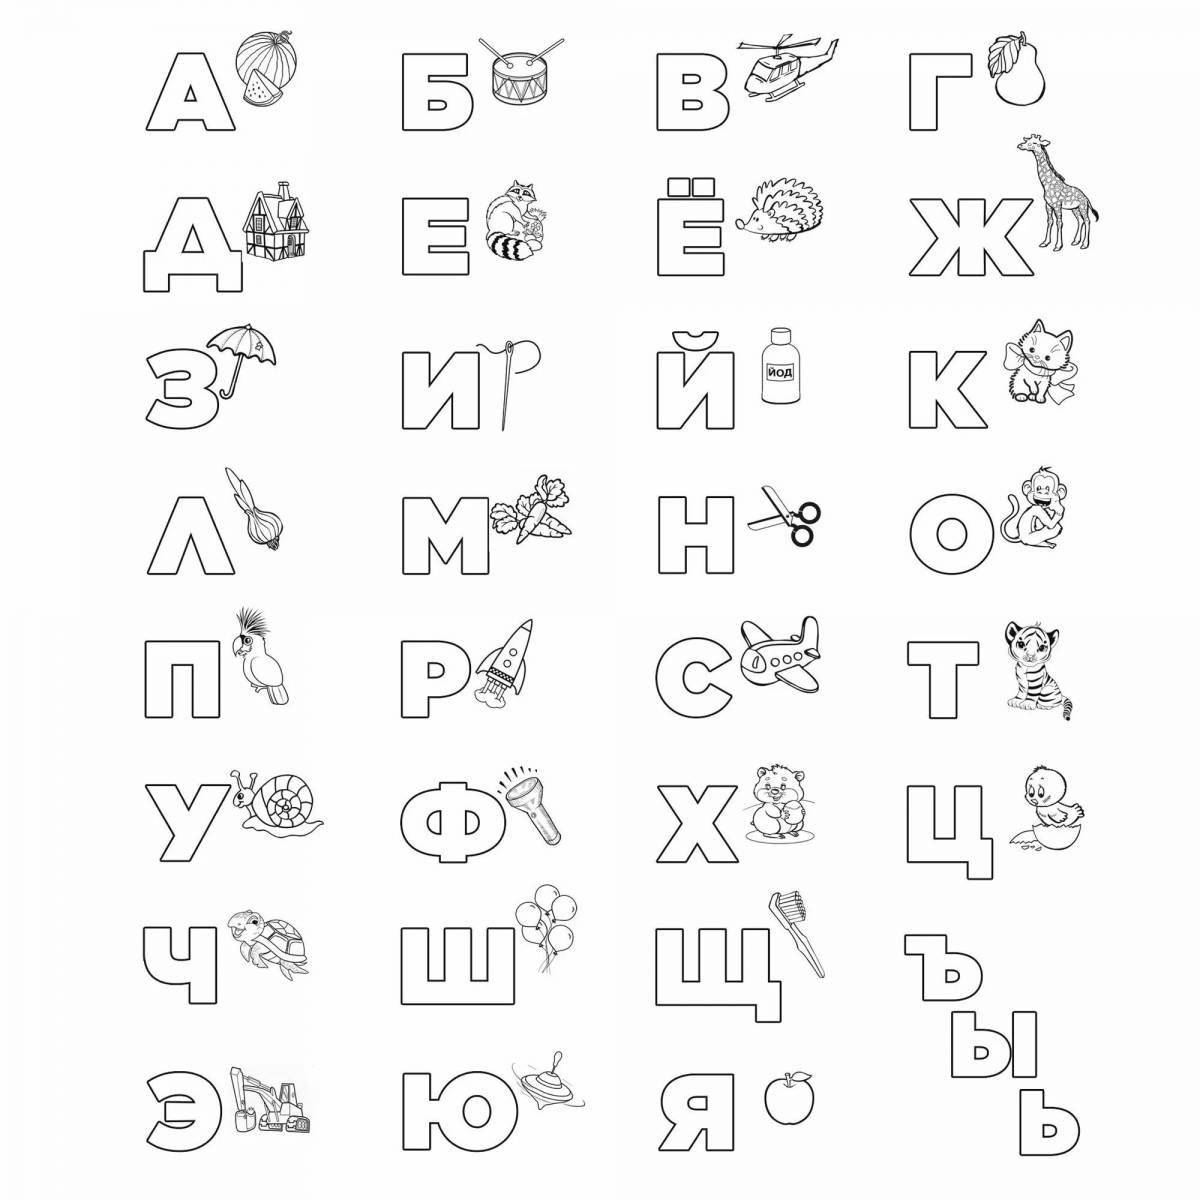 Вдохновляющая раскраска казахского алфавита